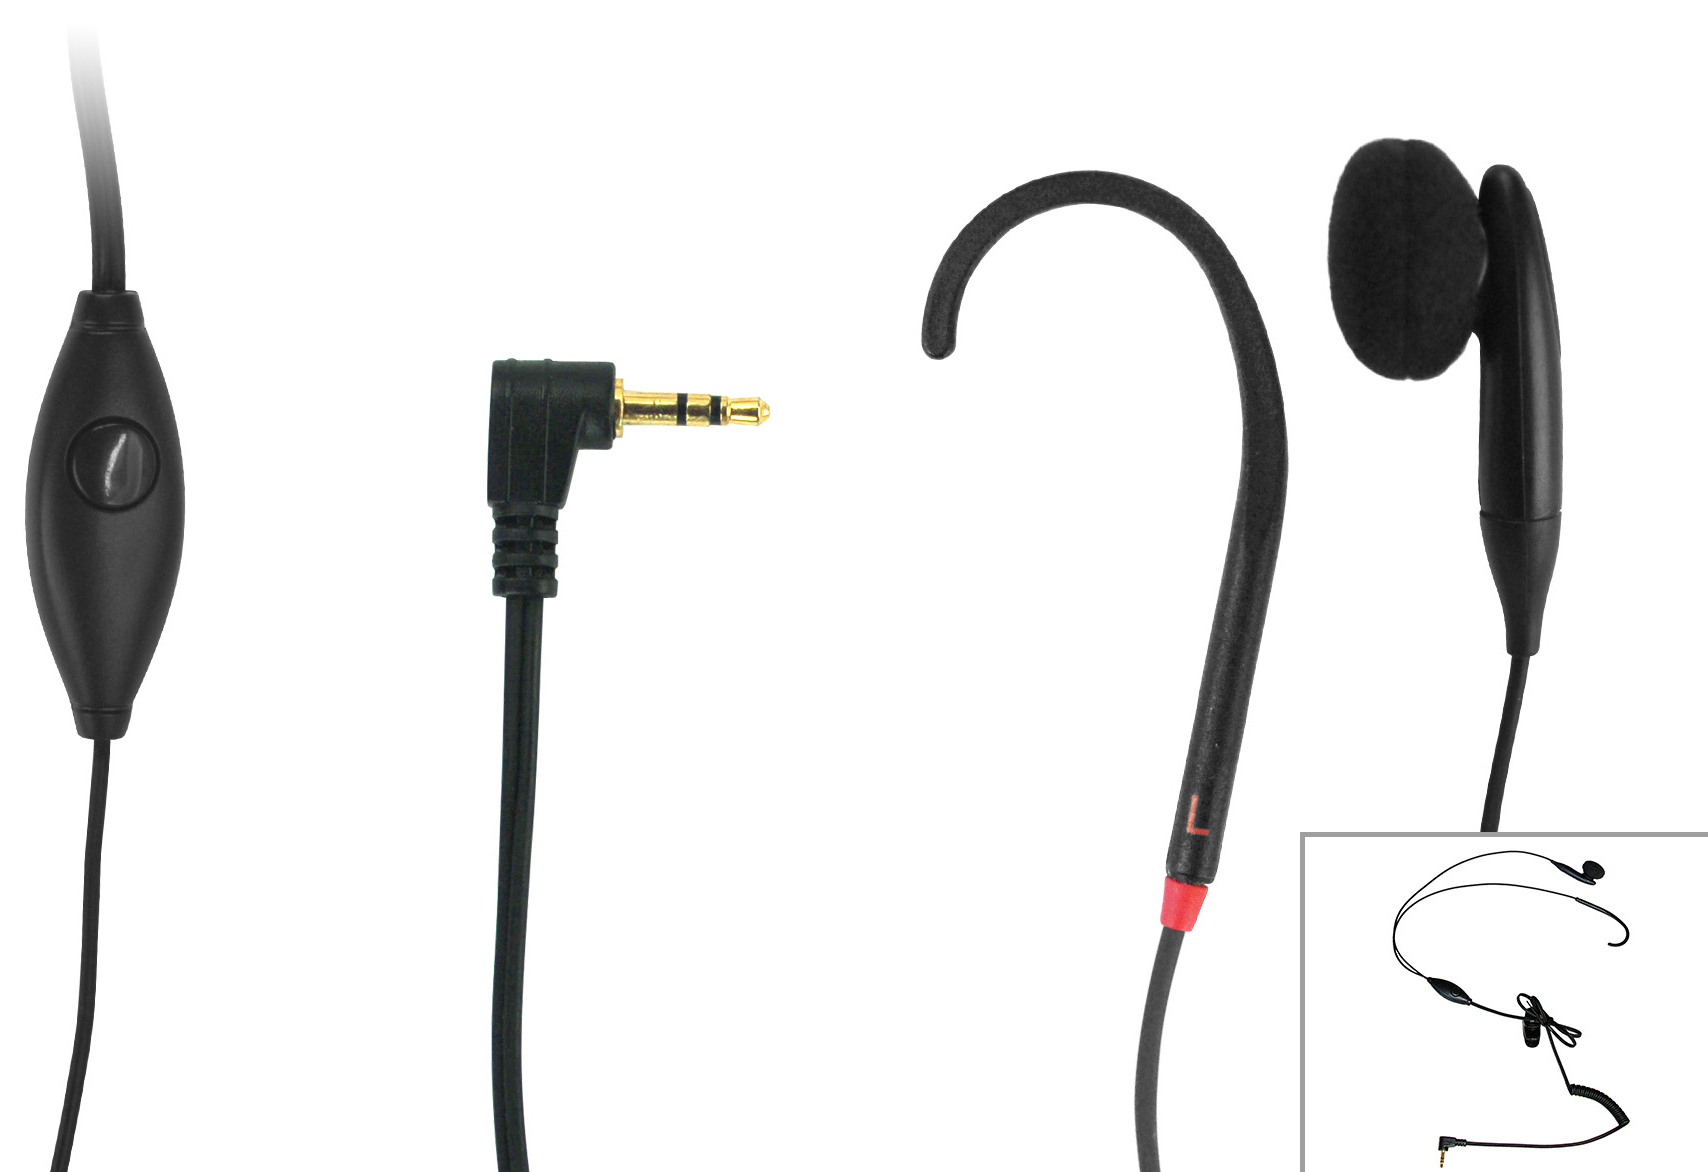 Cl Hook T-coil Ear Hooks For Mobile Phones 3